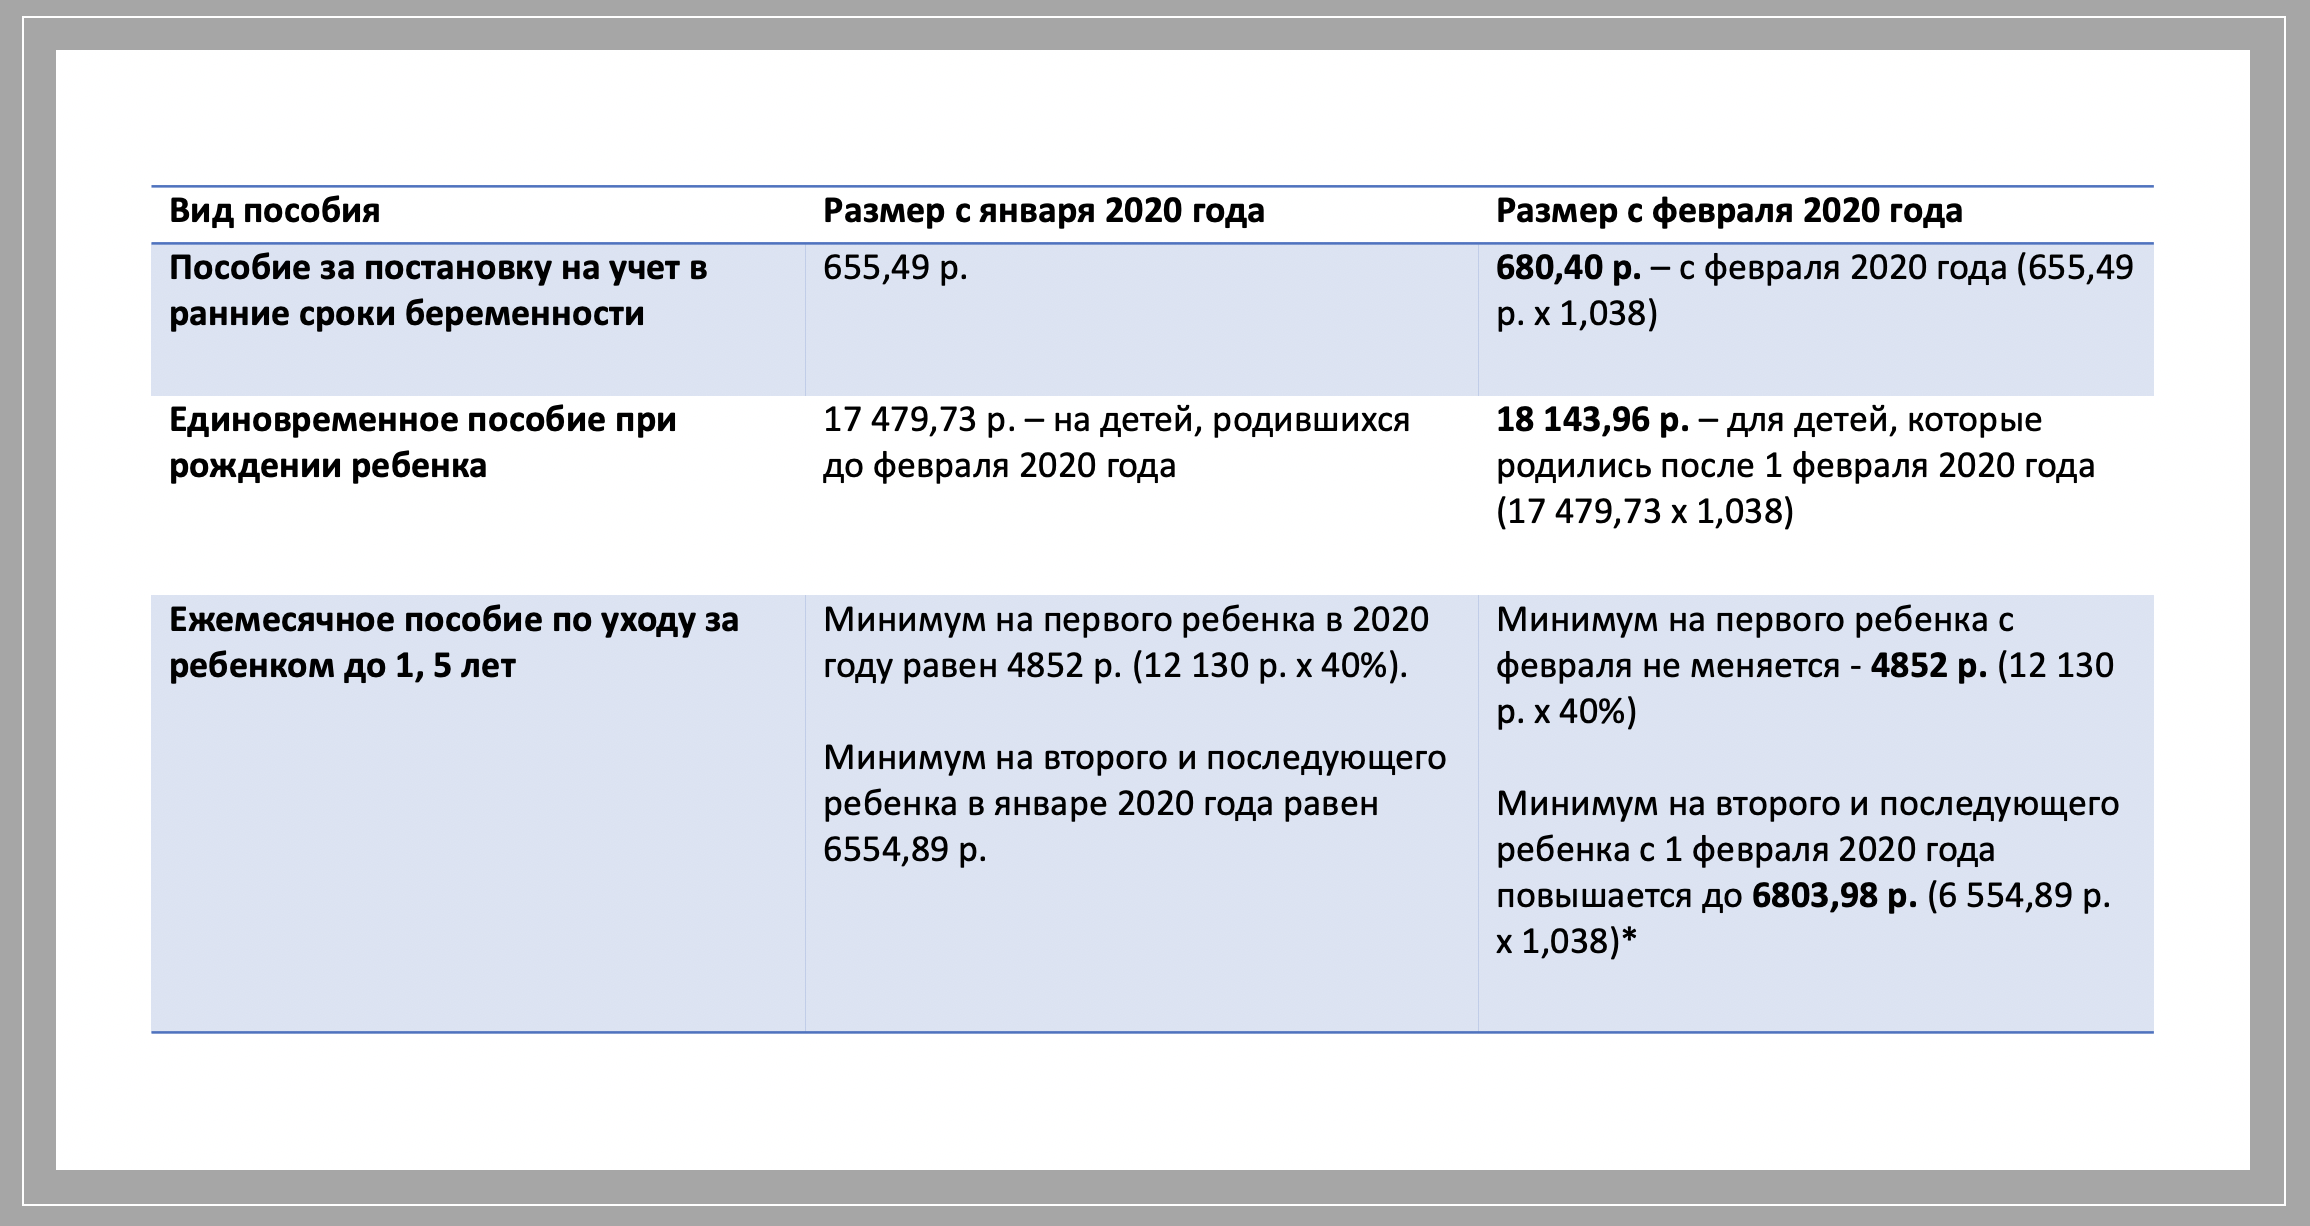 Пособие на ребенка в 2020 году будет составлять 88 000 рублей